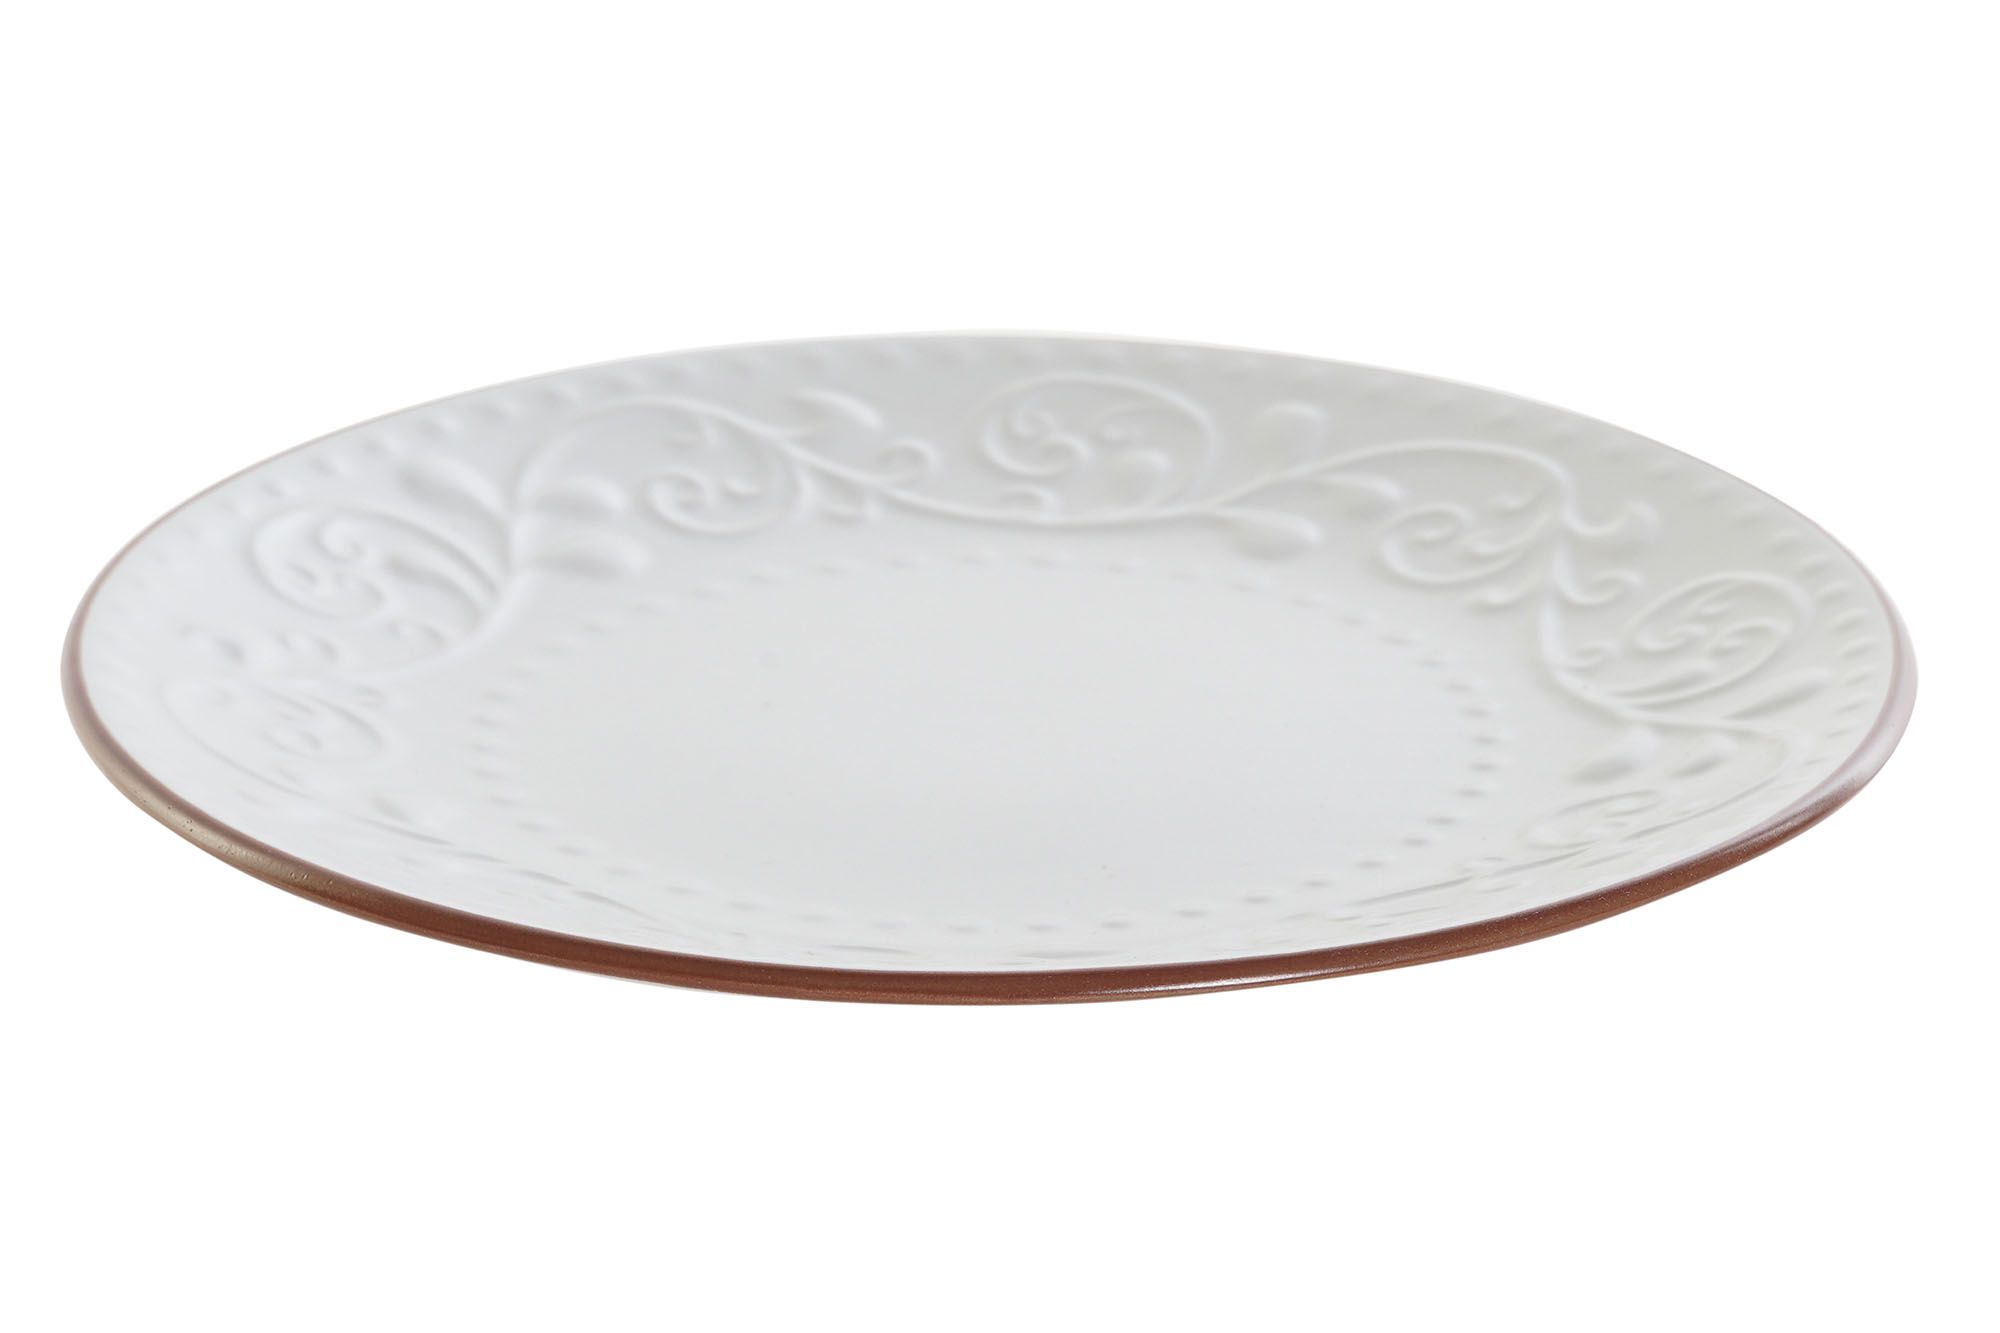 Servizio 6 piatti frutta ceramica bianca art PC-188251 diam22x2,5h €35